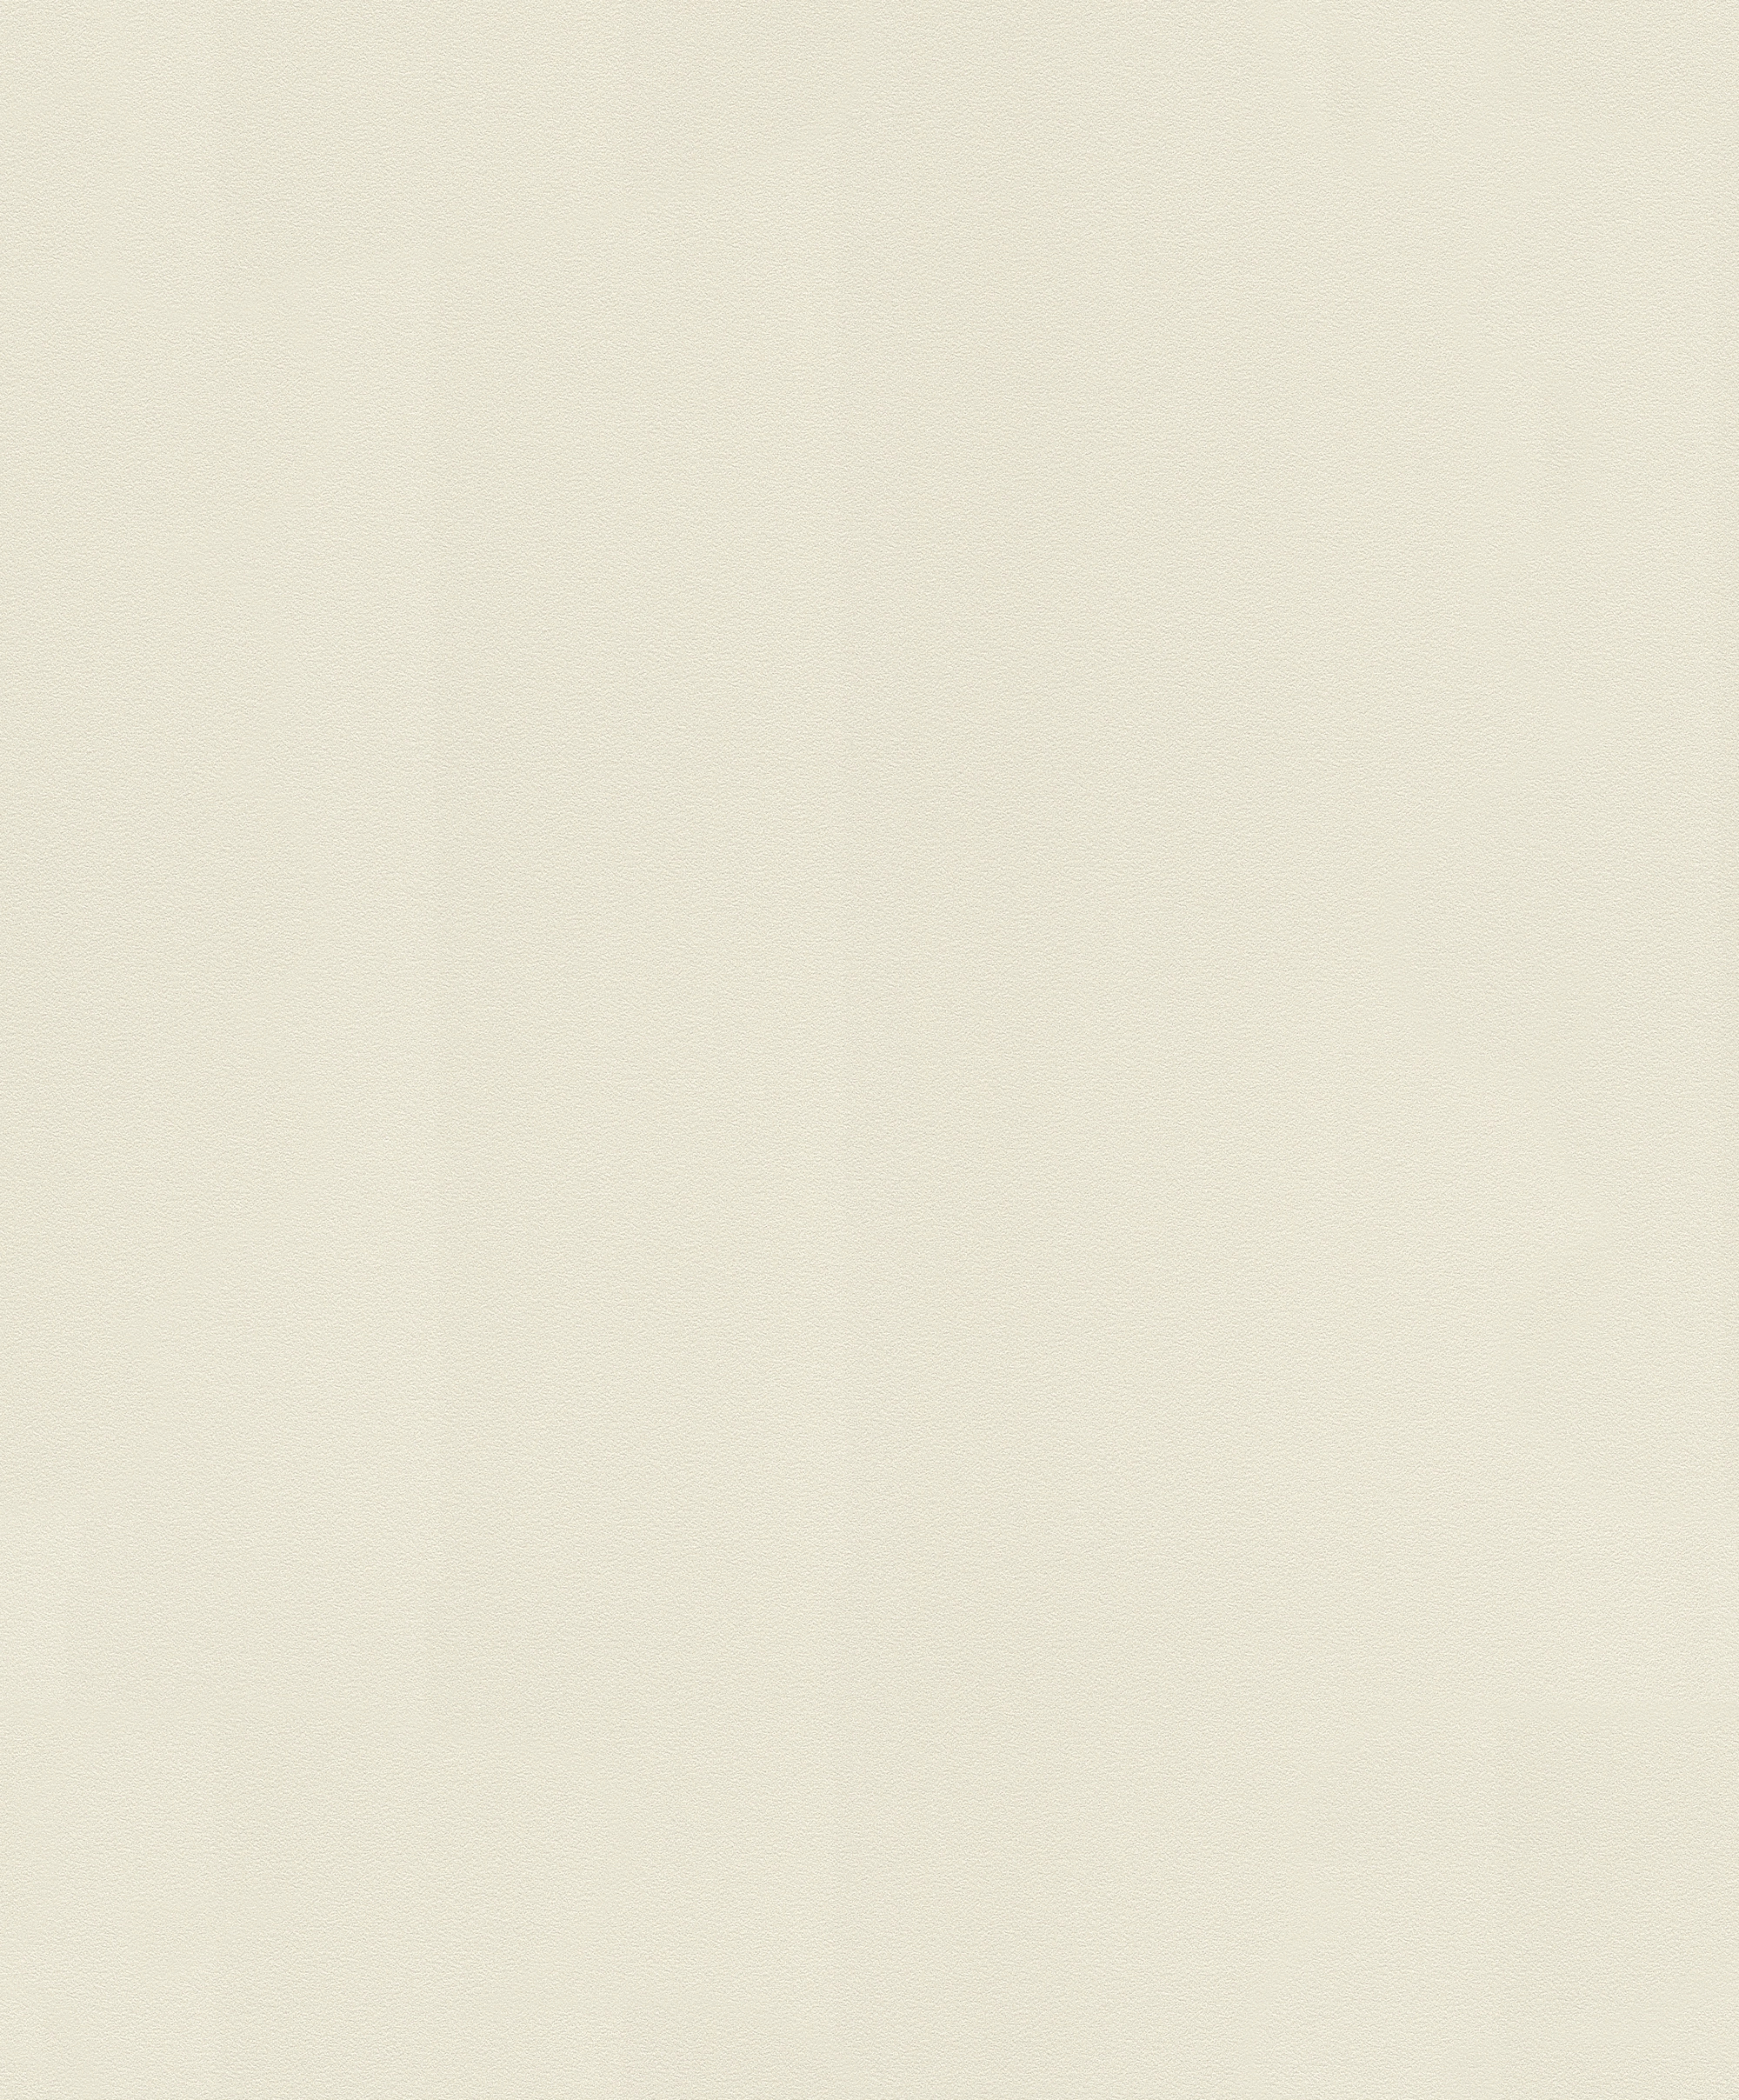 Egyszínű fehér struktúrált modern tapéta